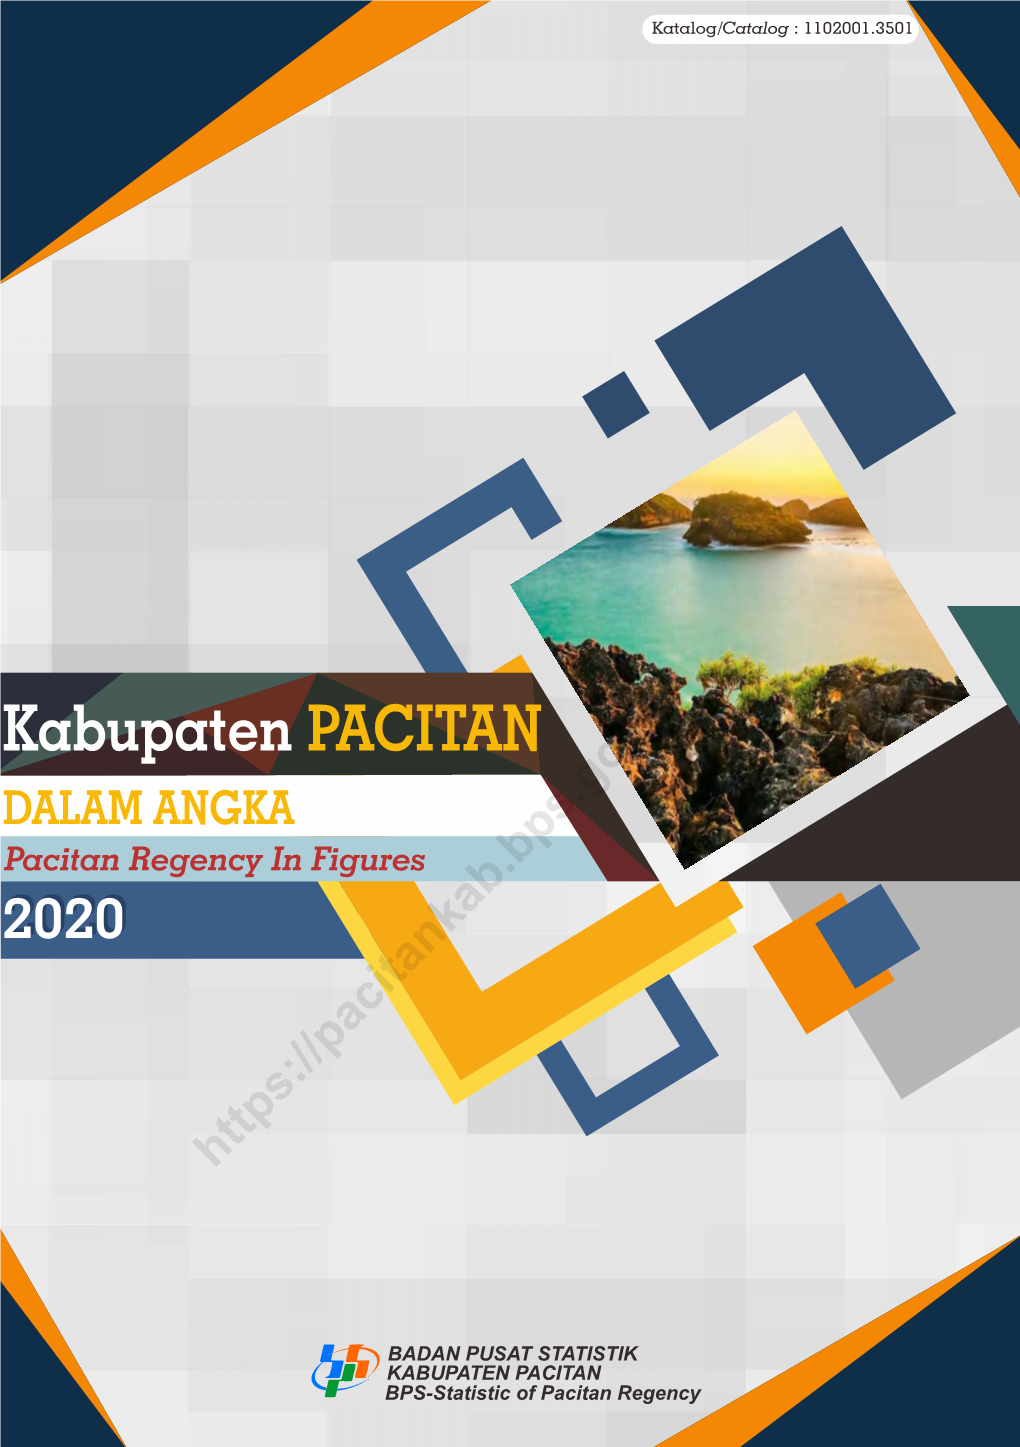 DALAM ANGKA Pacitan Regency in Figures 20202020